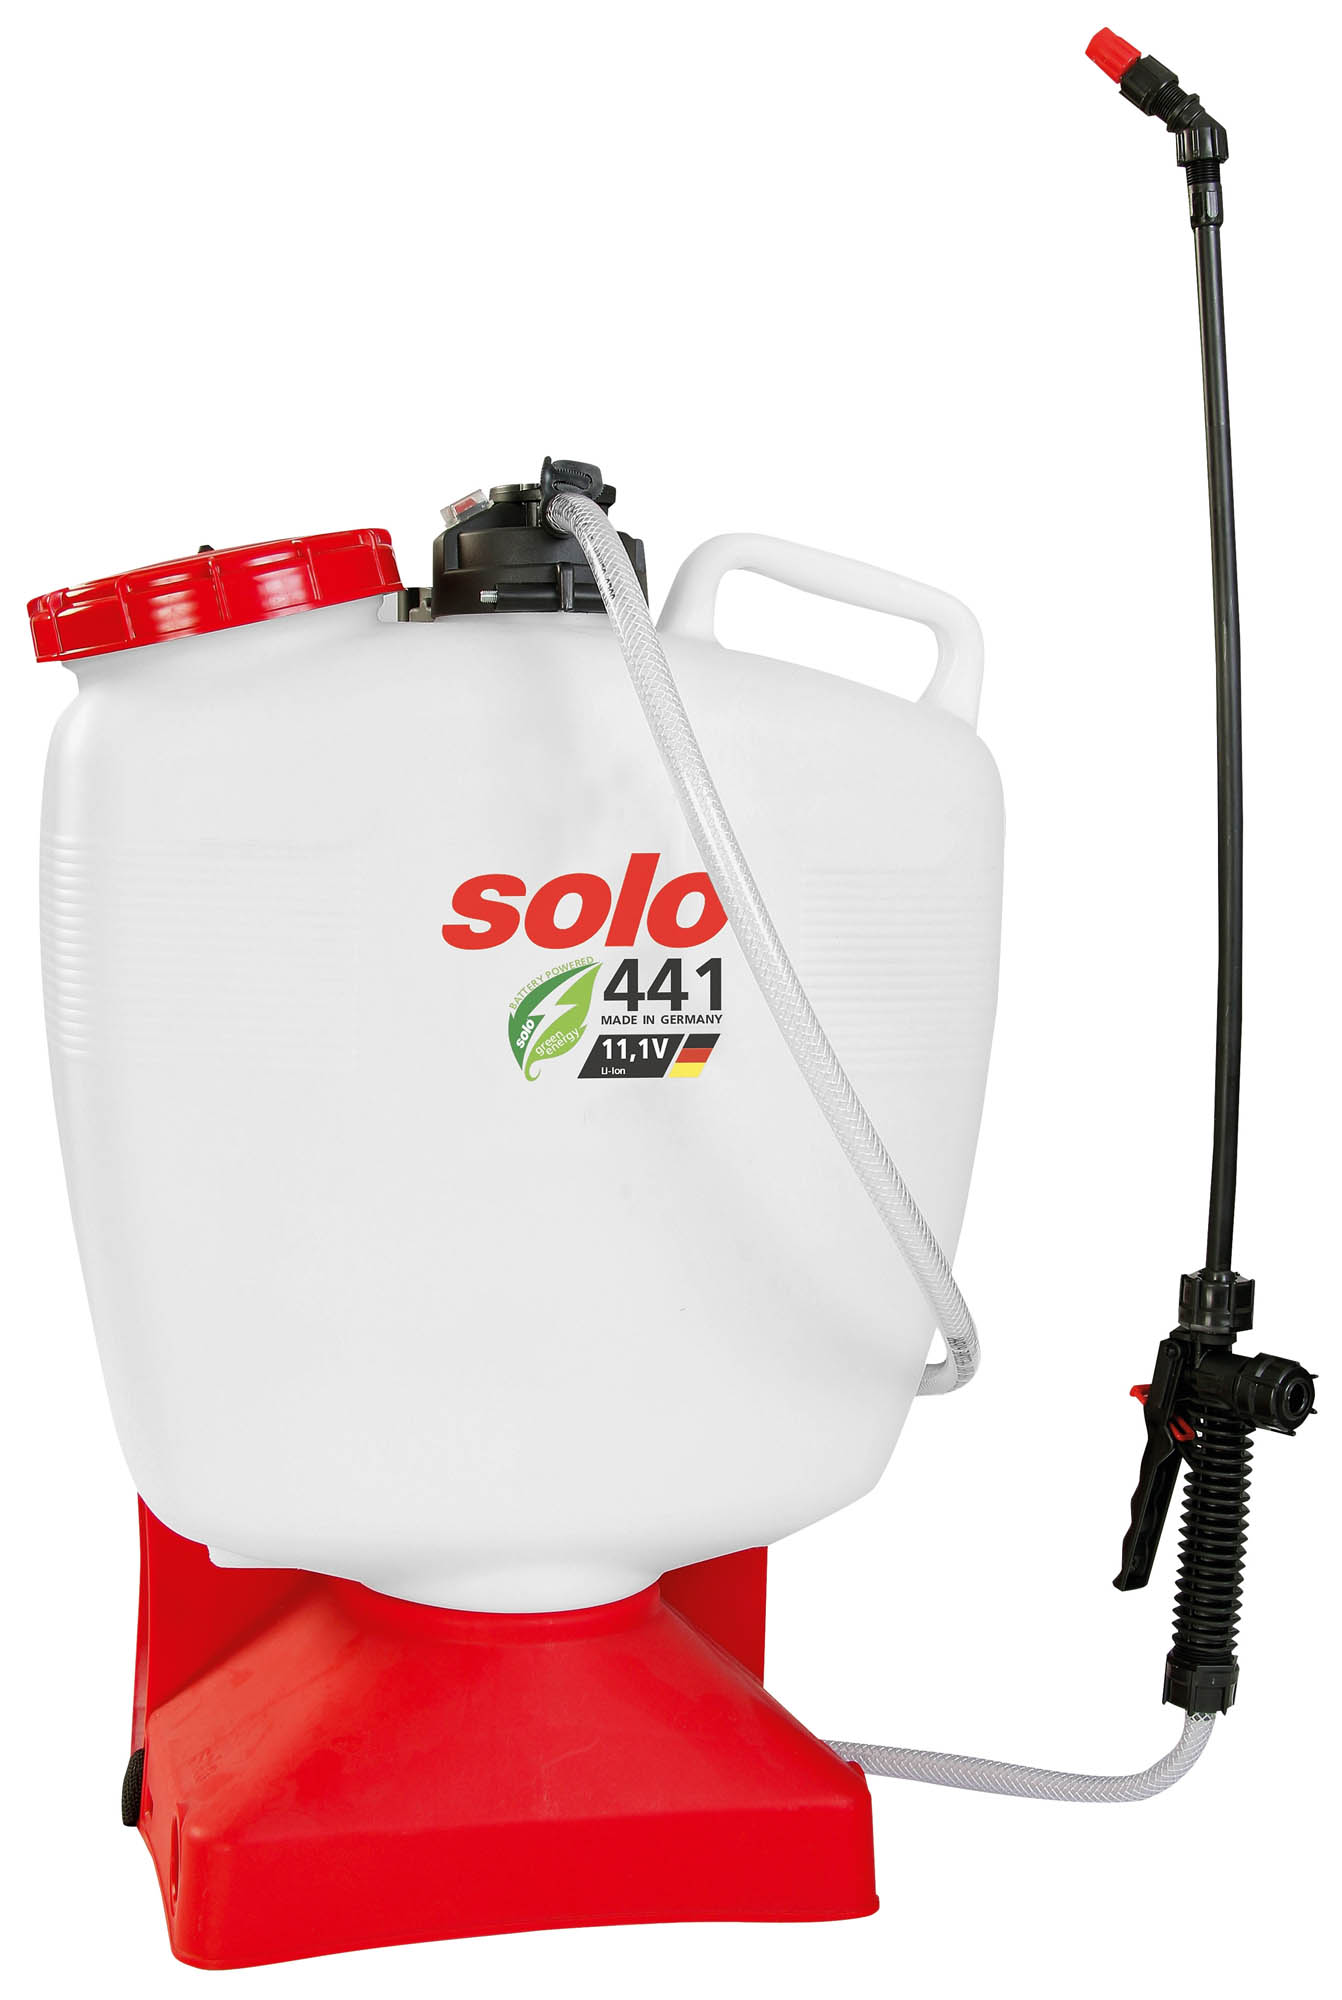 Solo Solo441